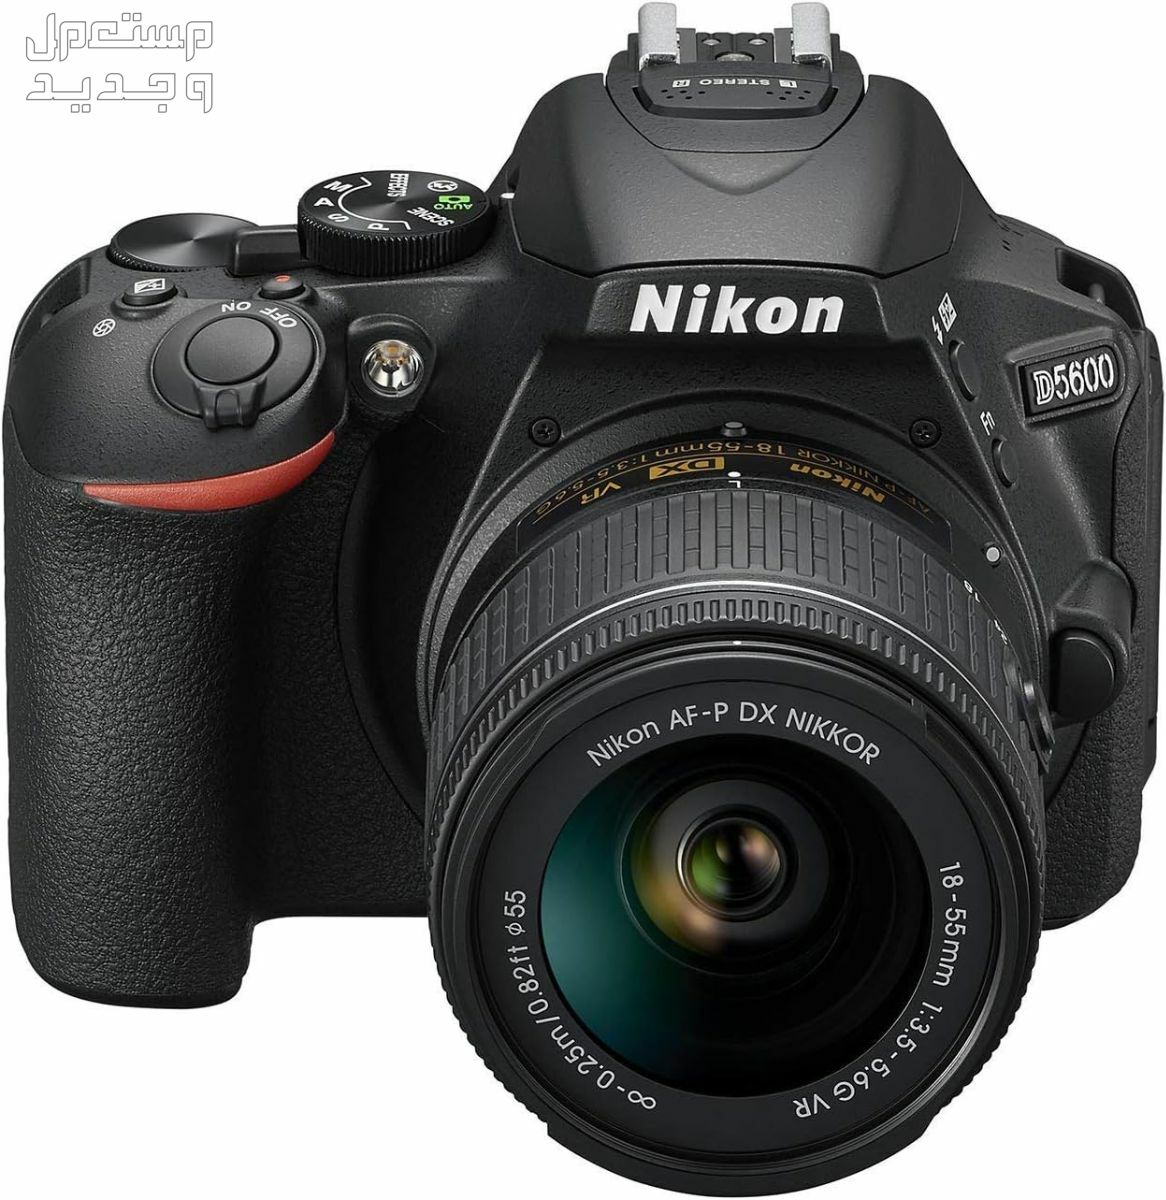 10 كاميرات تصوير ماركات عالمية بأسعار رخيصة في فلسطين سعر كاميرا Nikon D5600